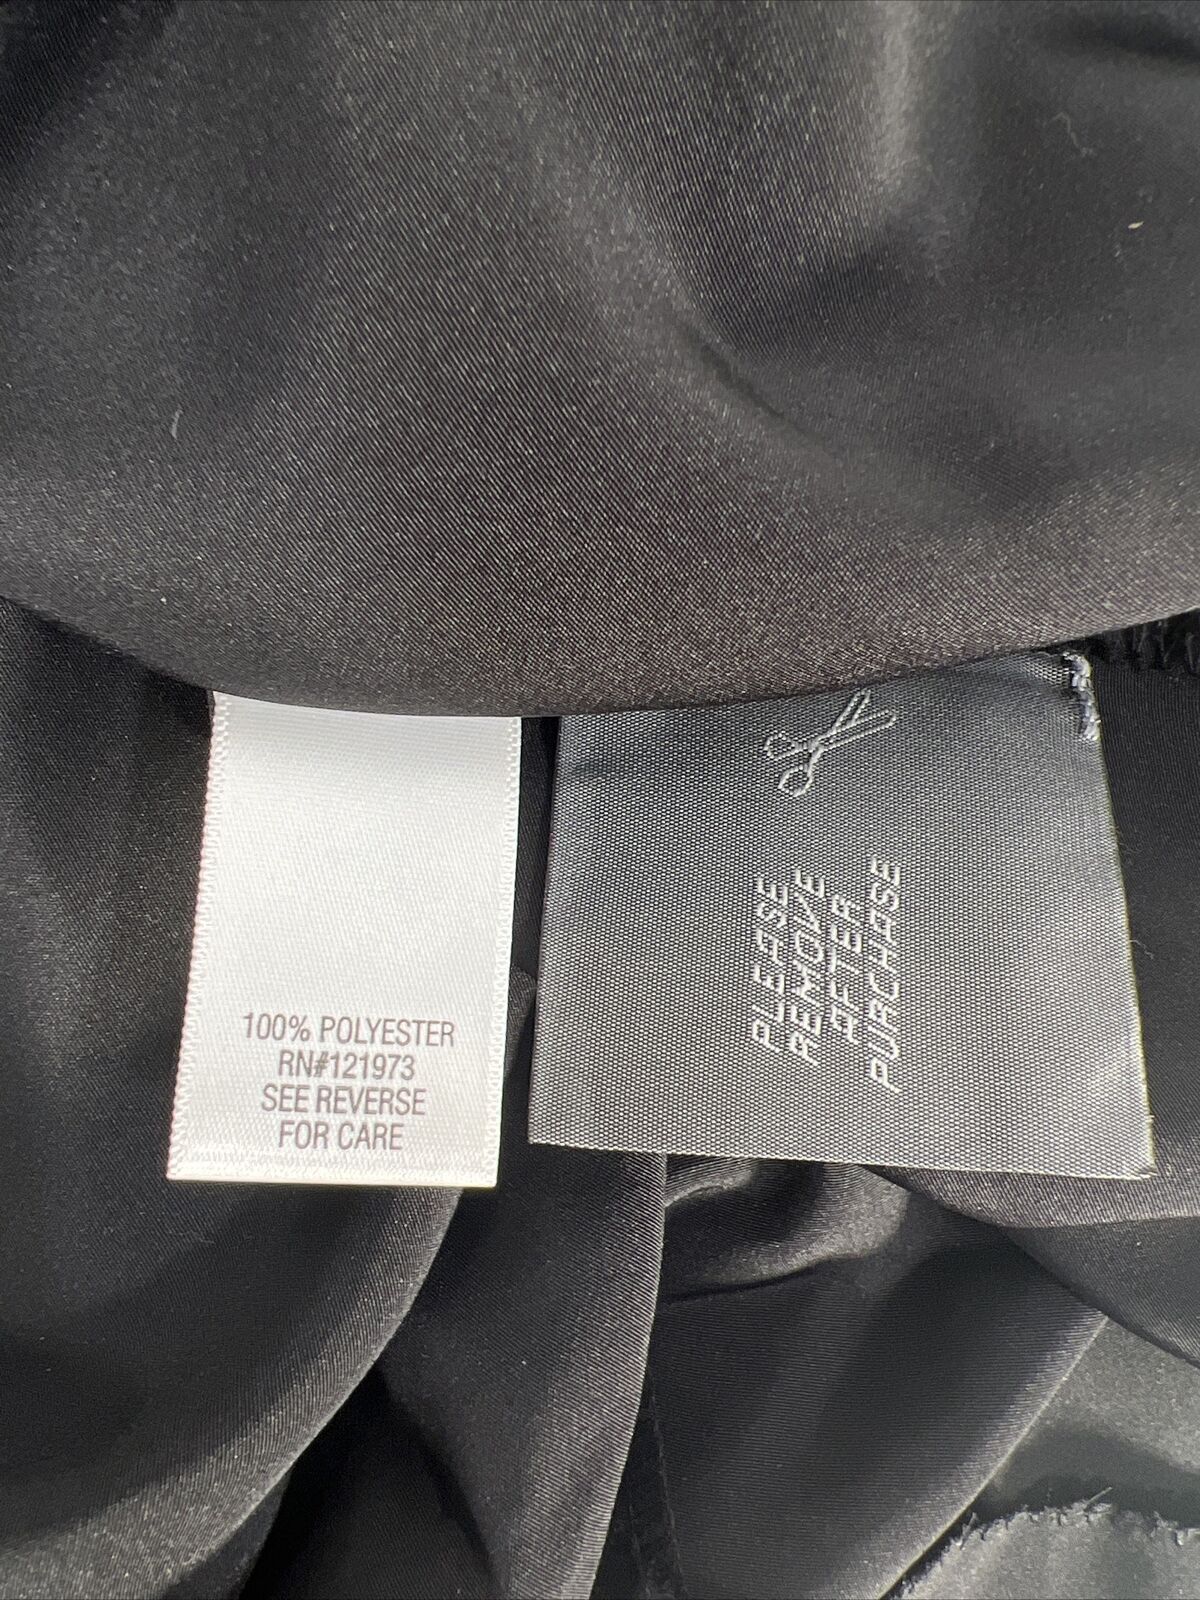 NUEVO Blusa de manga corta negra con pedrería en la parte delantera de Simply Vera Wang para mujer - L